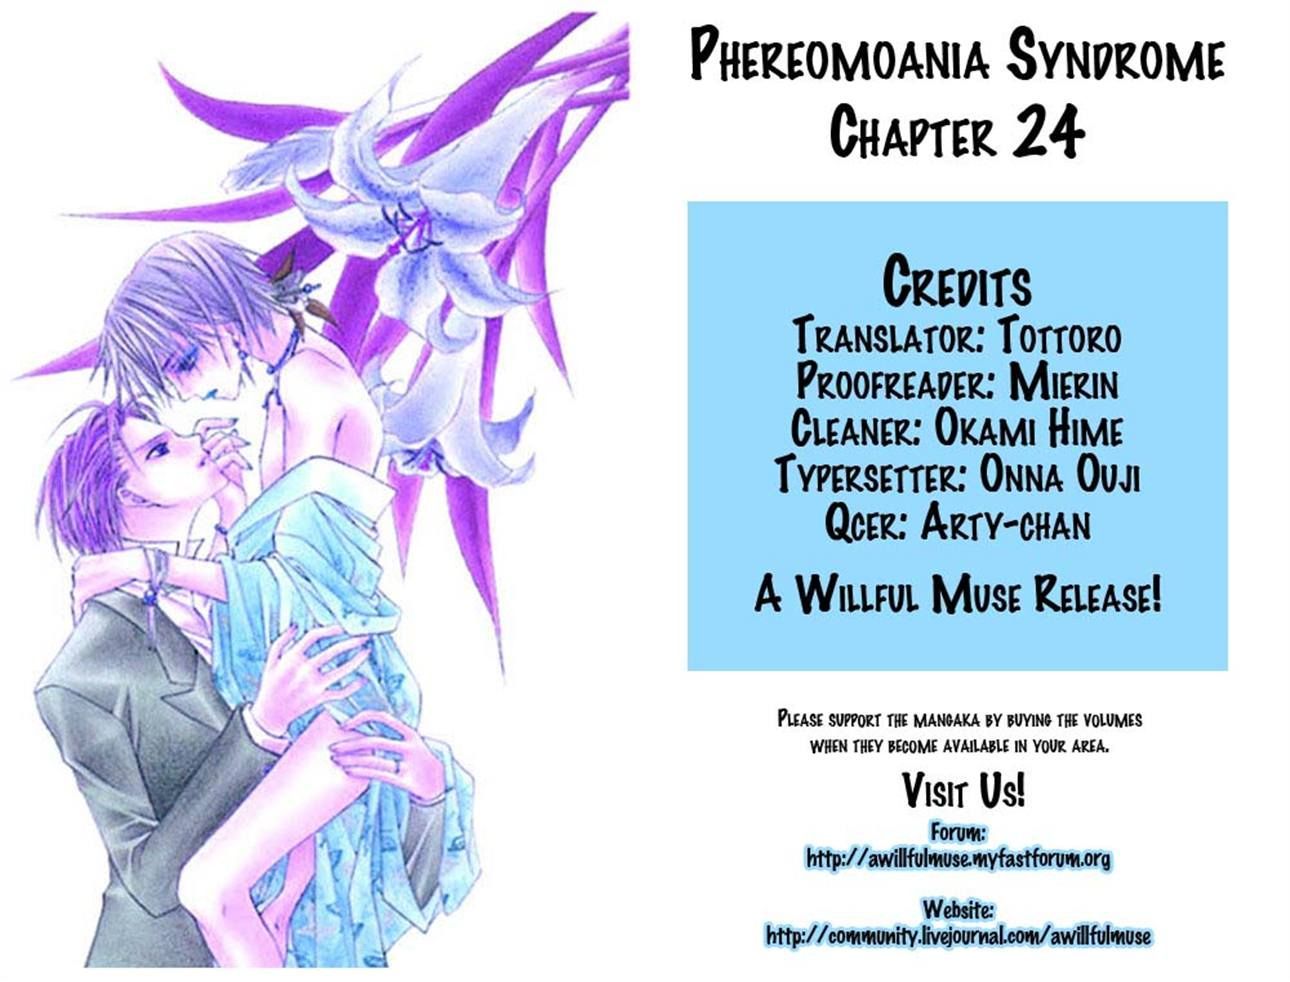 Pheromomania Syndrome Chapter 24 #33